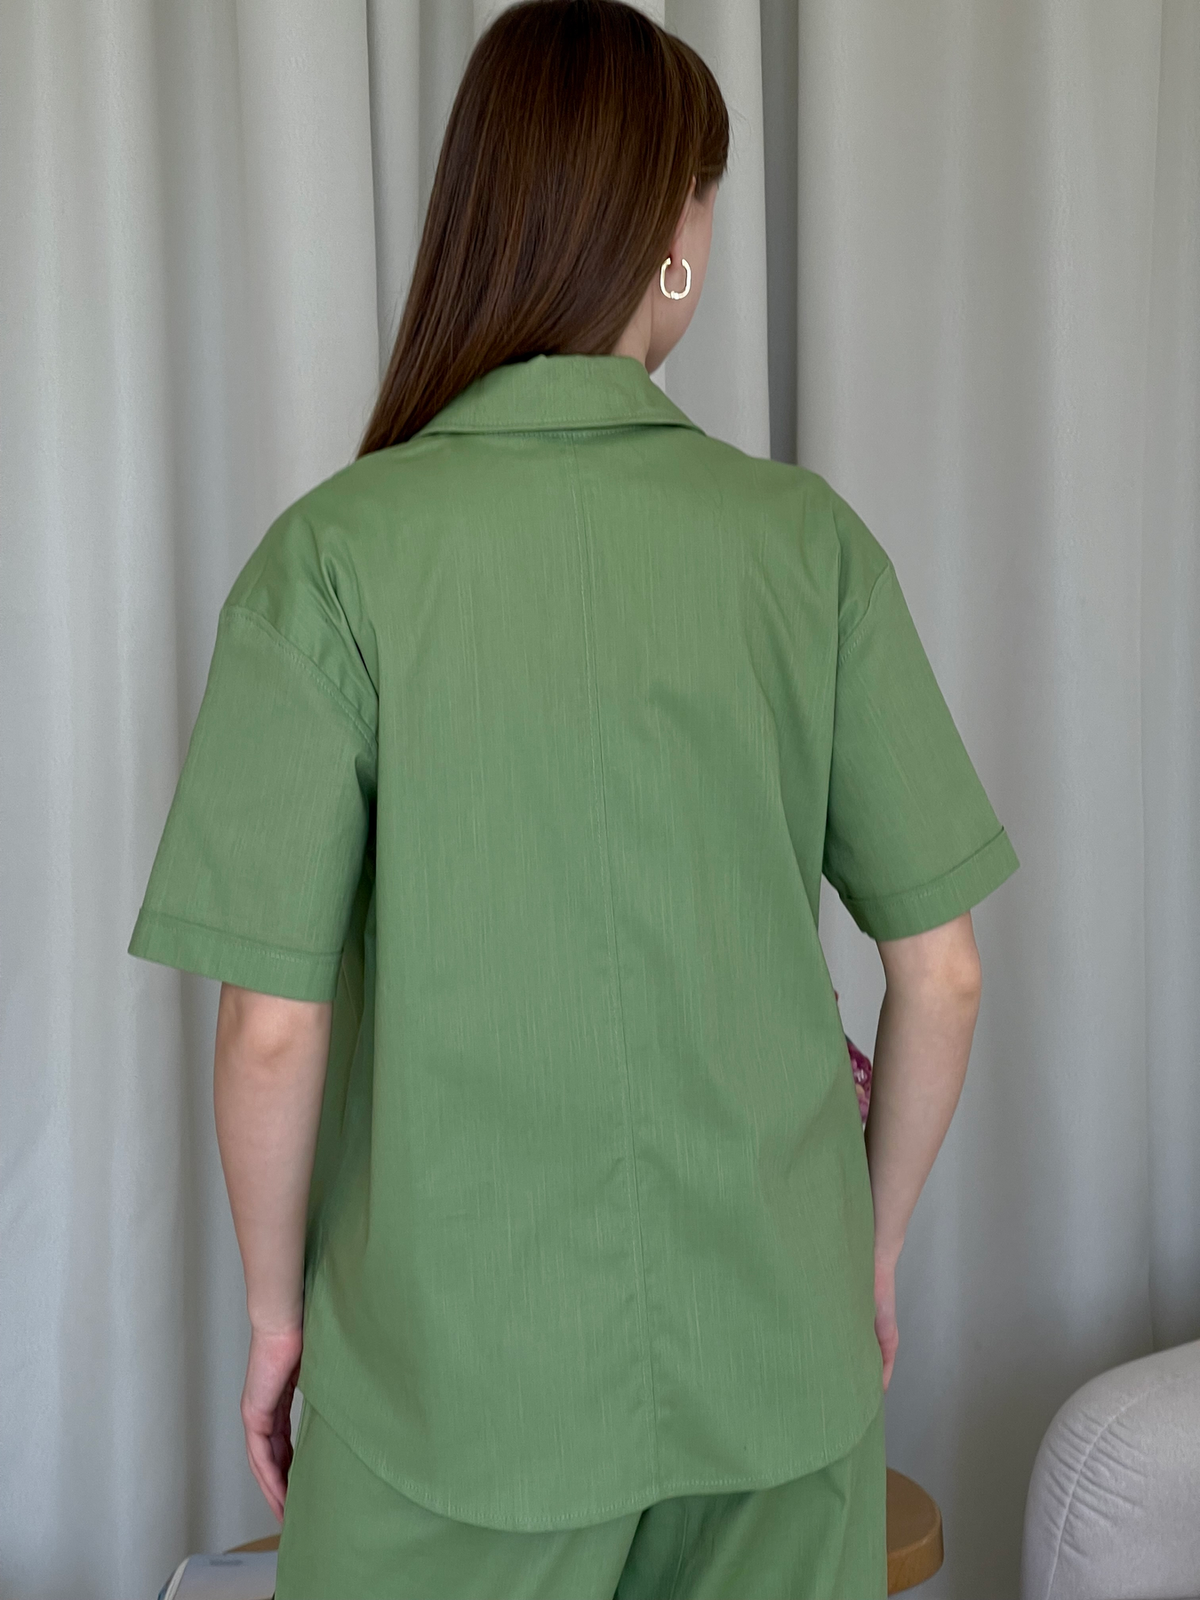 Купить Льняная рубашка с коротким рукавом зеленая Merlini Нино 200001205 размер 42-44 (S-M) в интернет-магазине